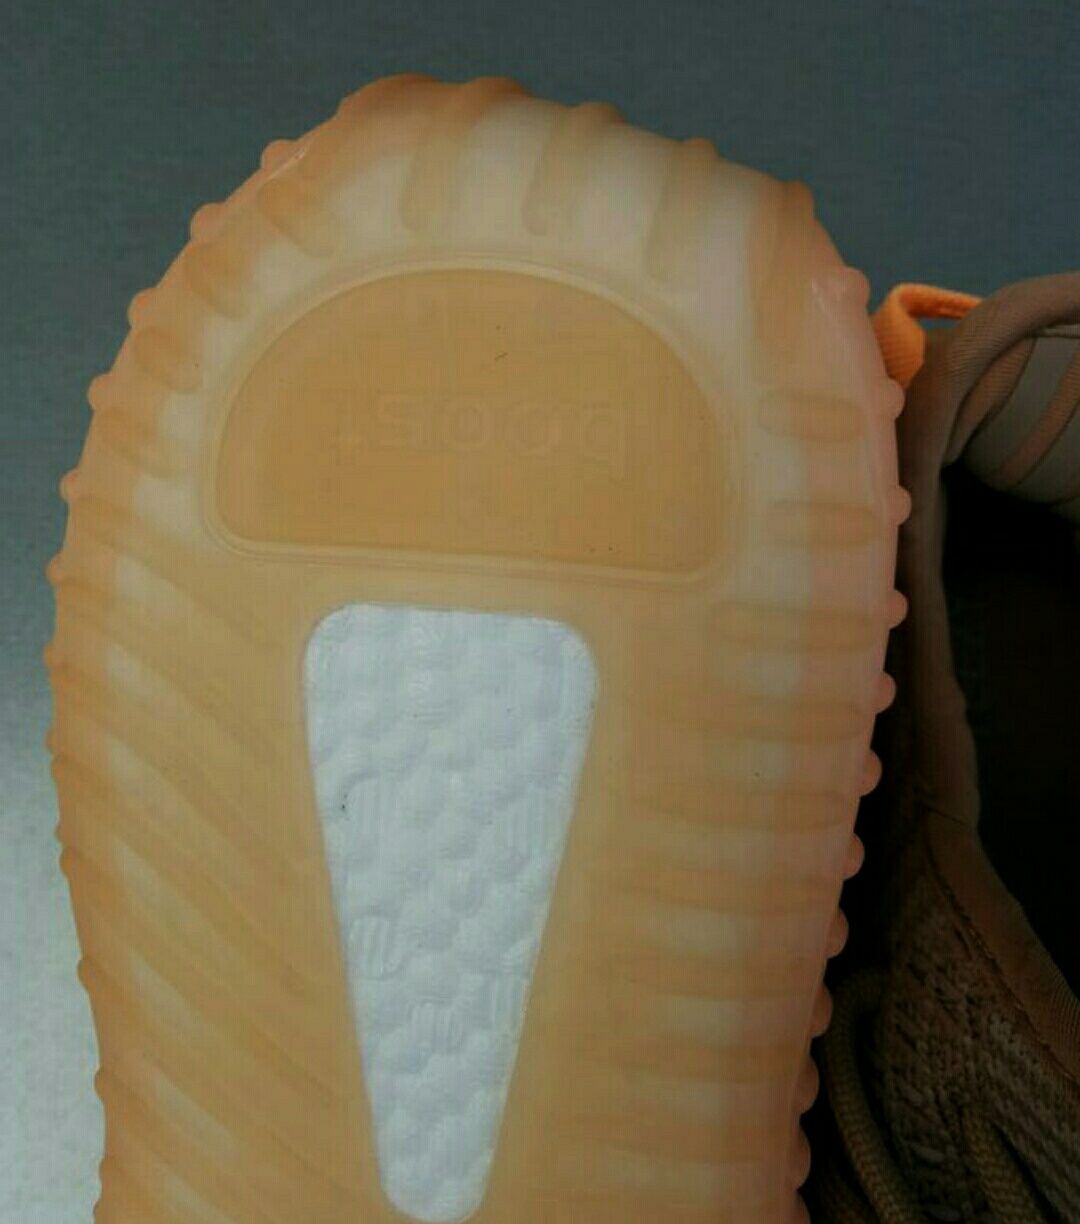 Adidas Yeezy Boost 350 кроссовки женские бежево оранжевые р 36,37